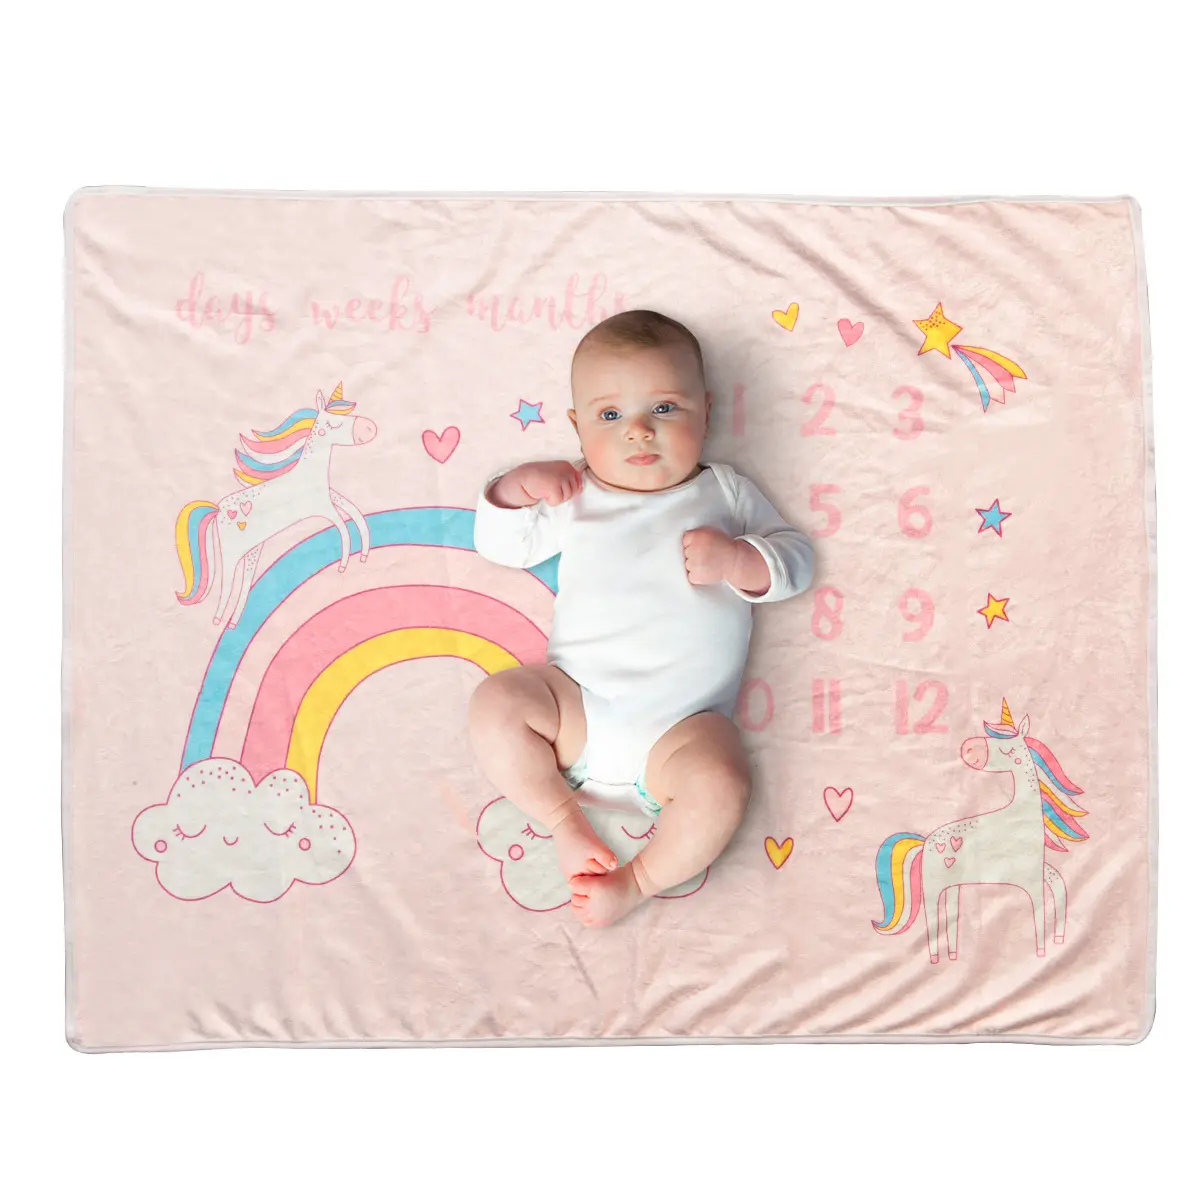 Baby monatliche Meilenstein Decke für Baby-Dusche Geschenk Fotografie Hintergrund Prop Neugeborenen Flanell Wachstums tabelle